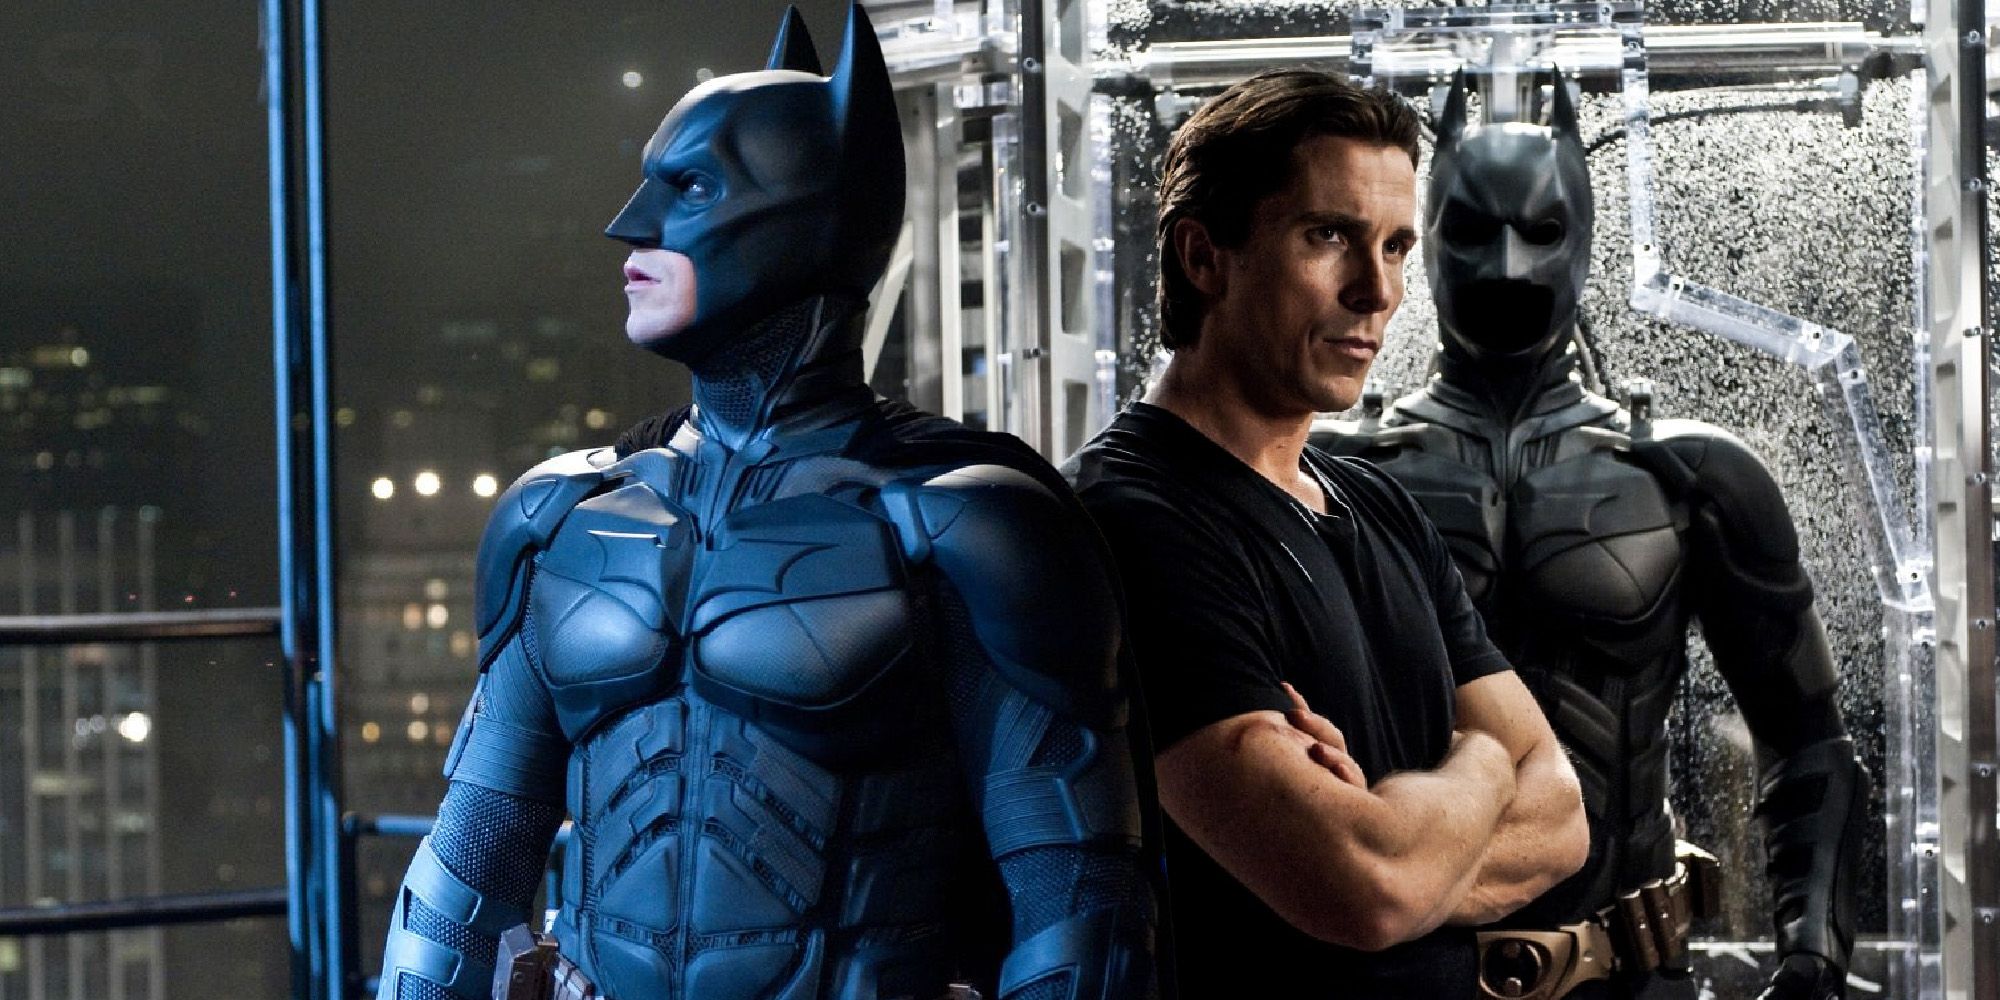 Christian Bale batman the Dark Knight Rises Bruce Wayne